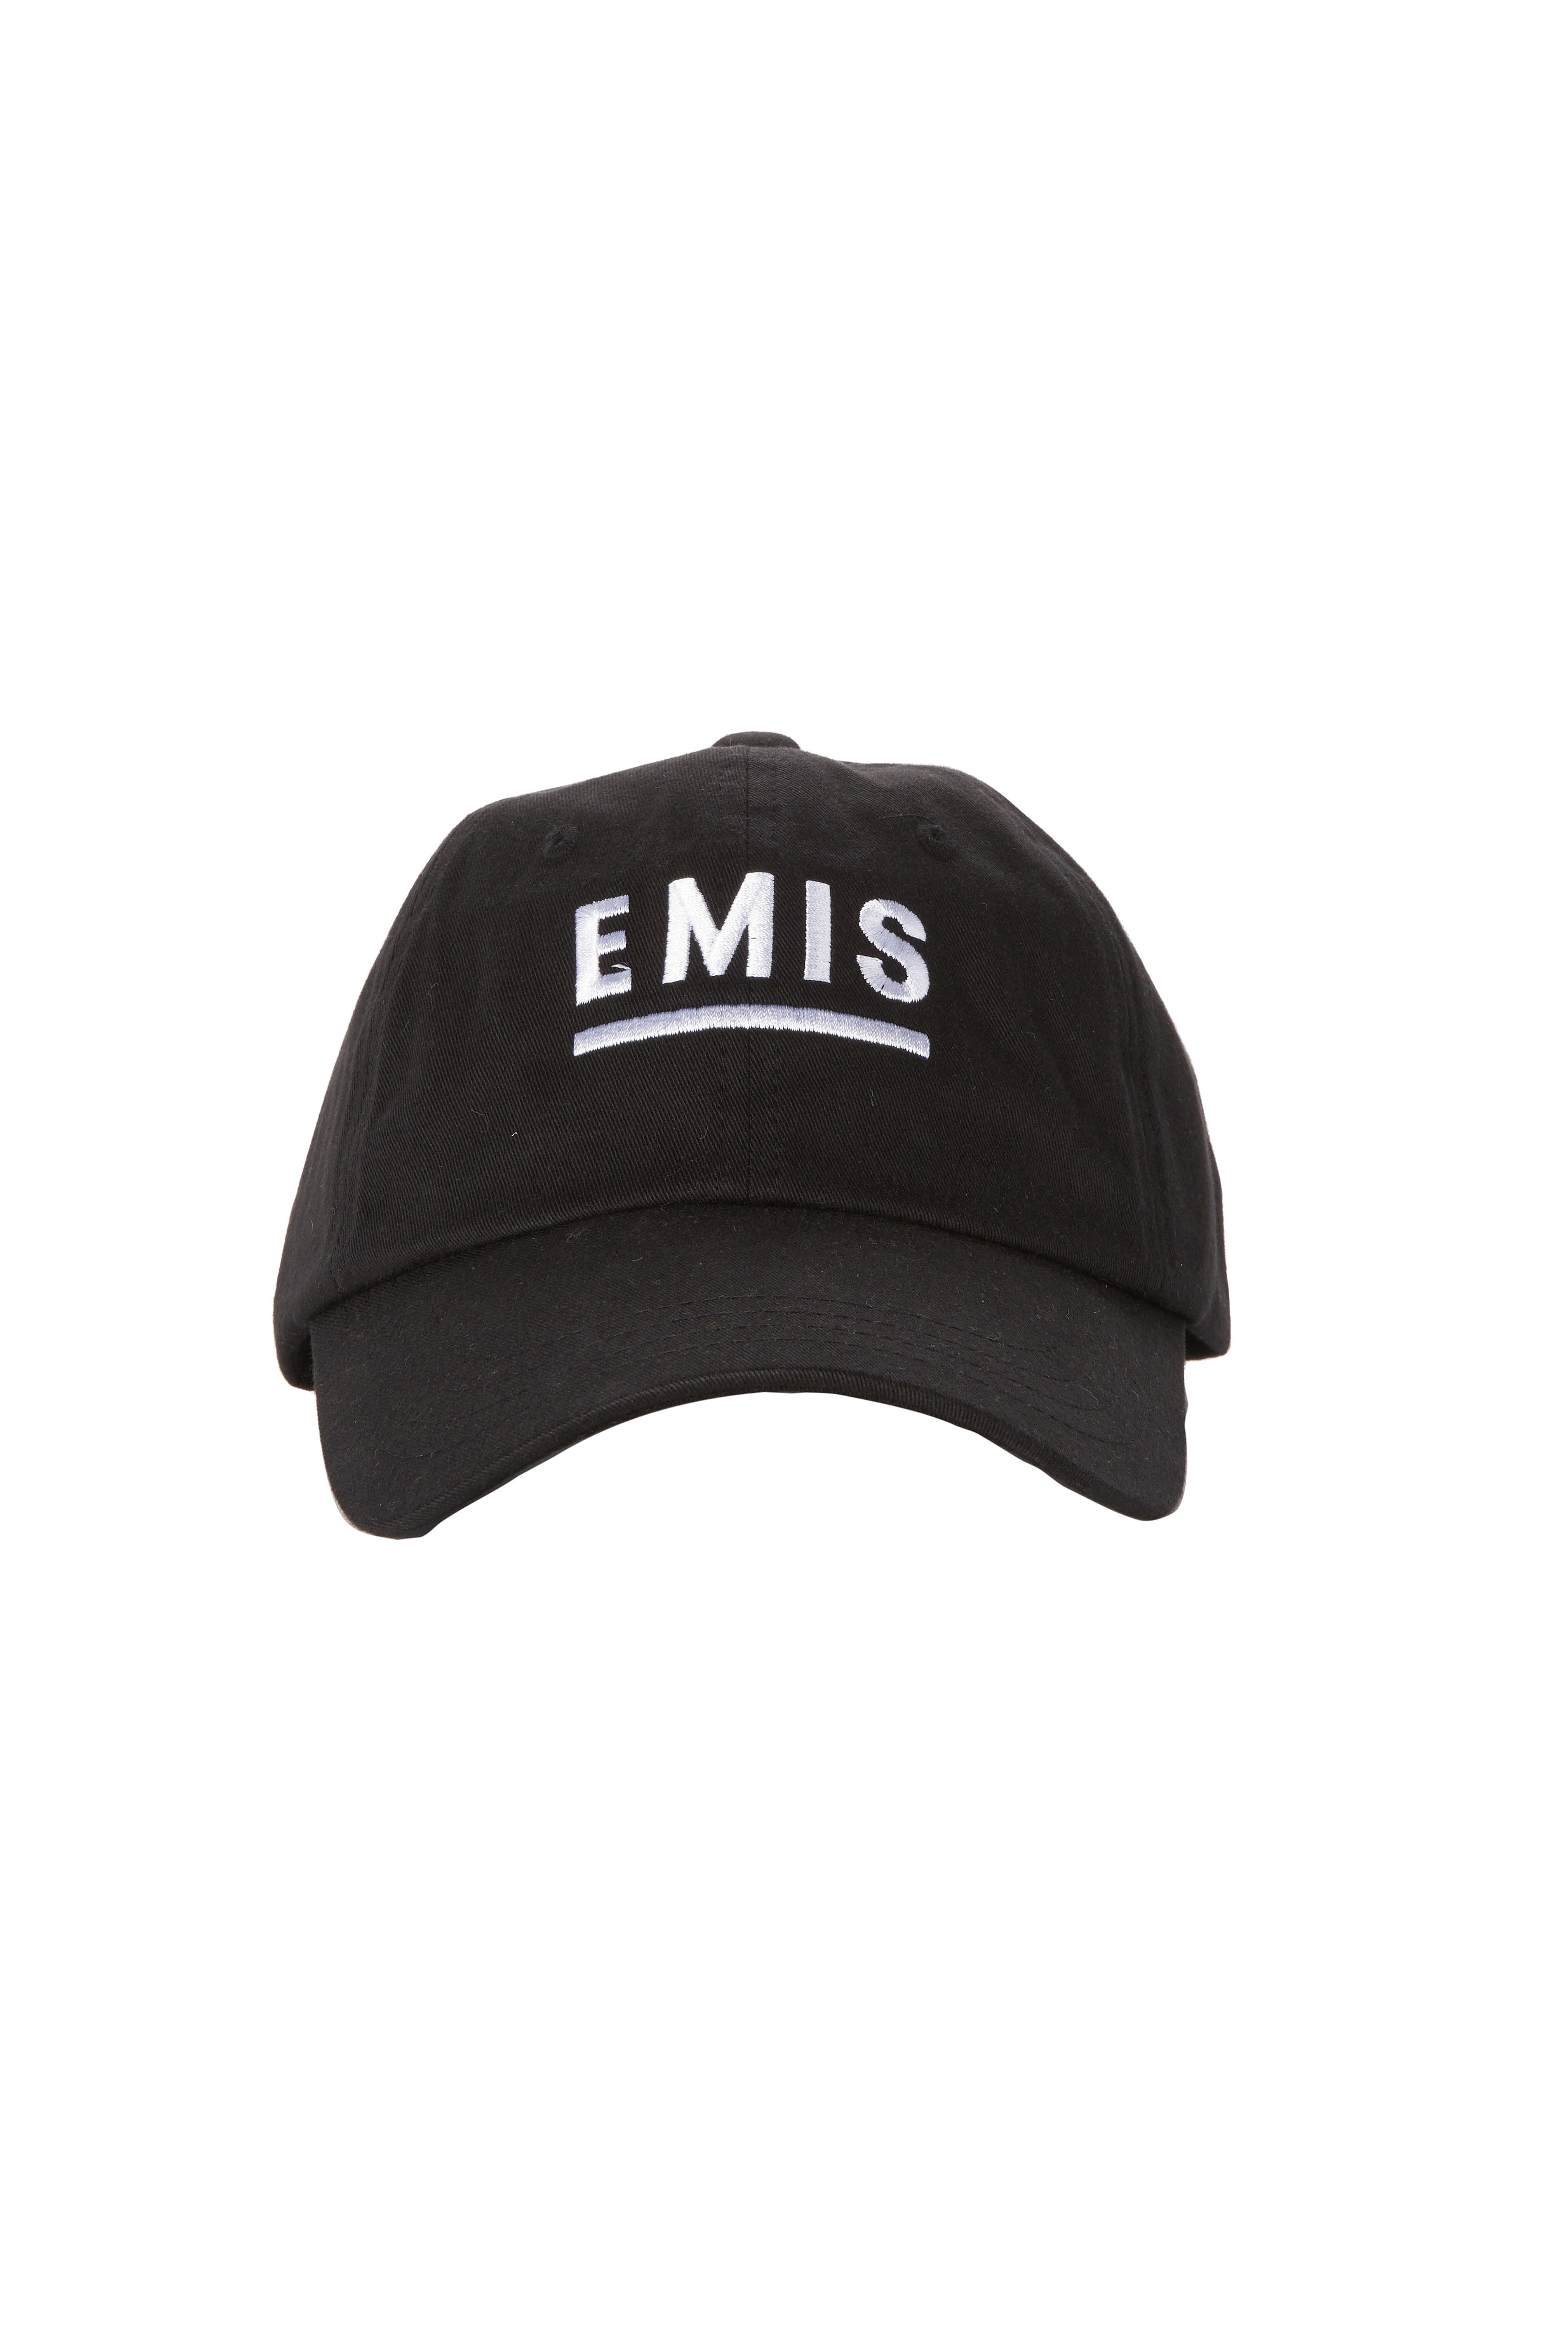 BLACK EP11 EMIS CAP